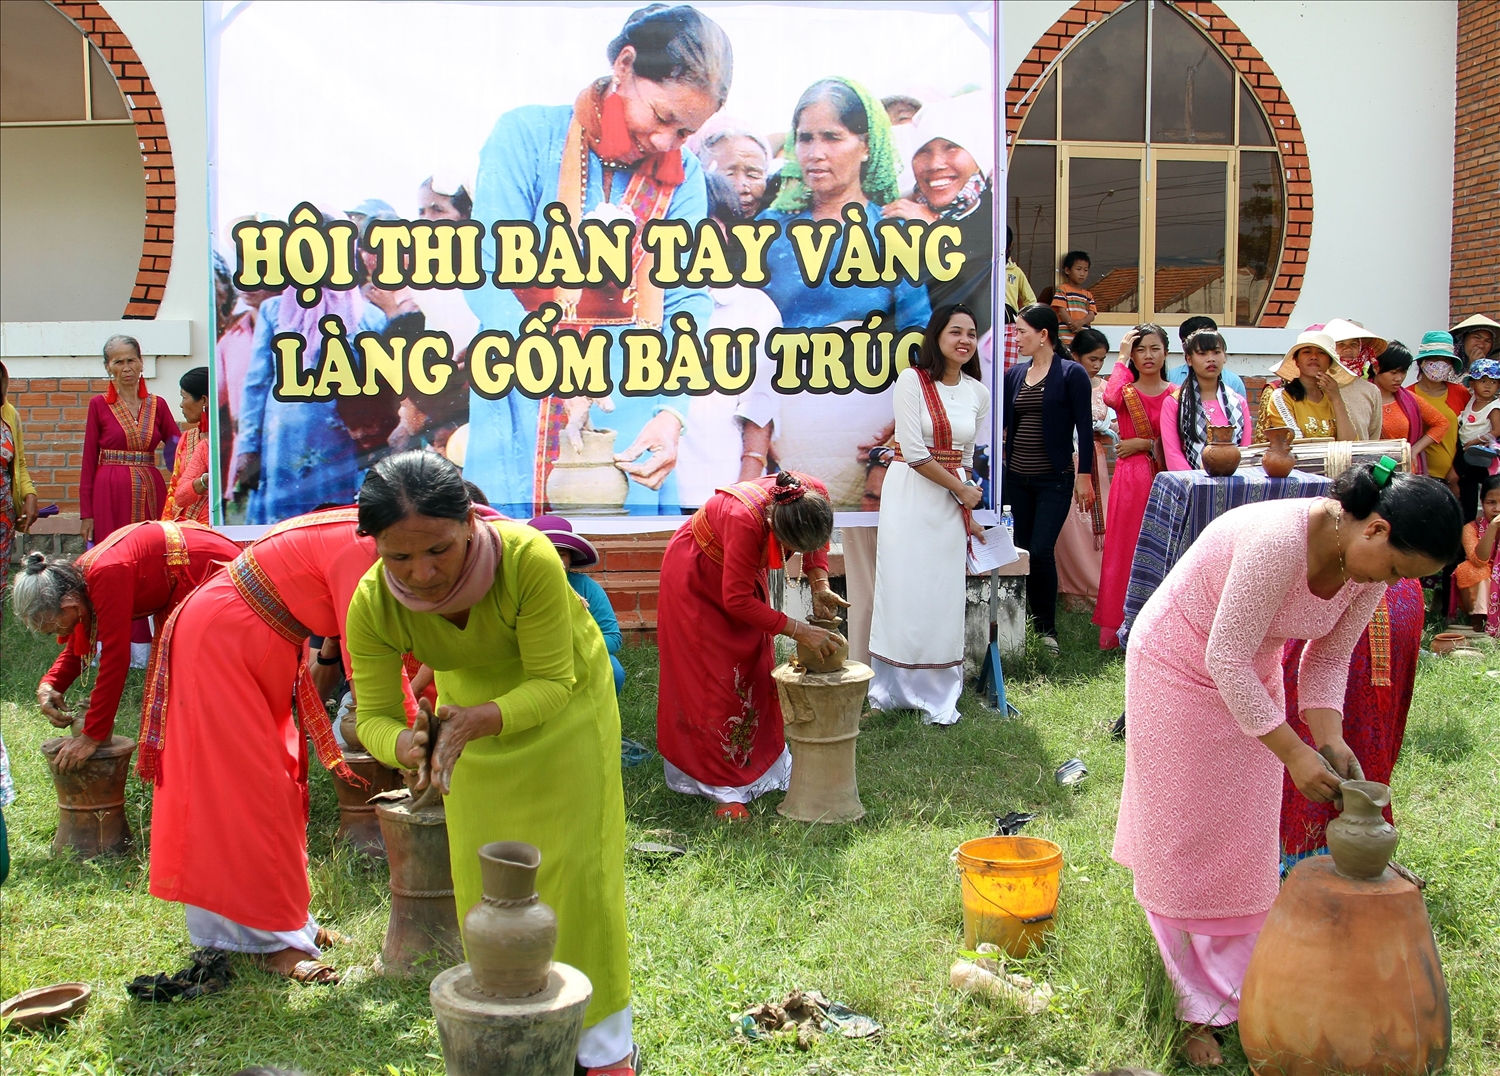 Nghệ nhân chế tác gốm Chăm tham gia Hội thi bàn tay vàng làng gốm Bàu Trúc 